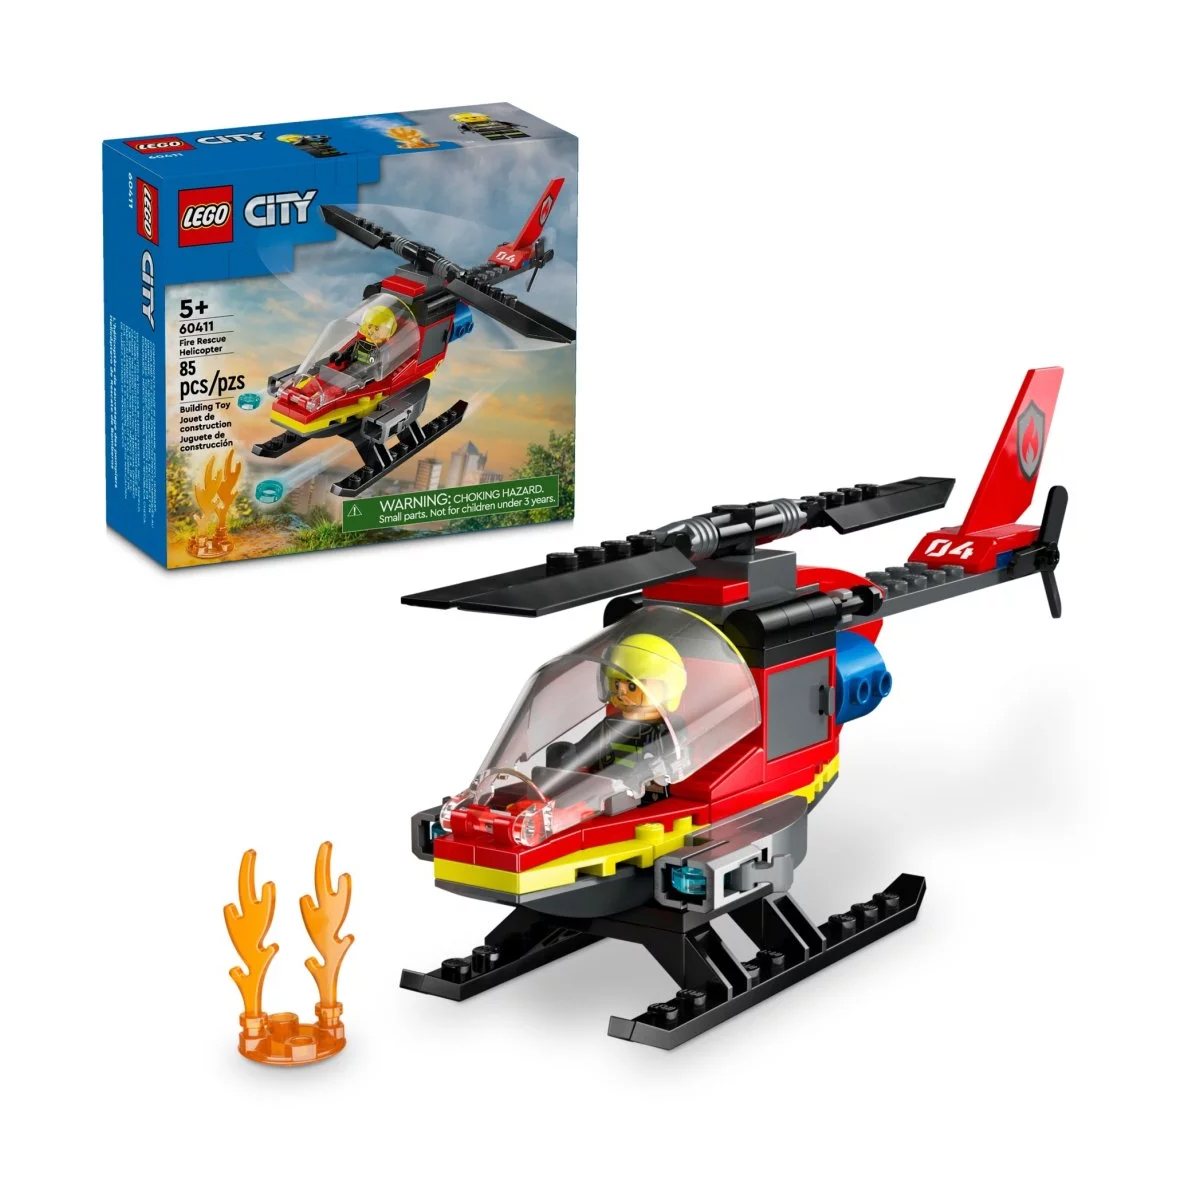 Конструктор Lego City Fire Rescue Helicopter 60411, 85 деталей lego city fire helicopter игрушка пожарной службы с вертолетом